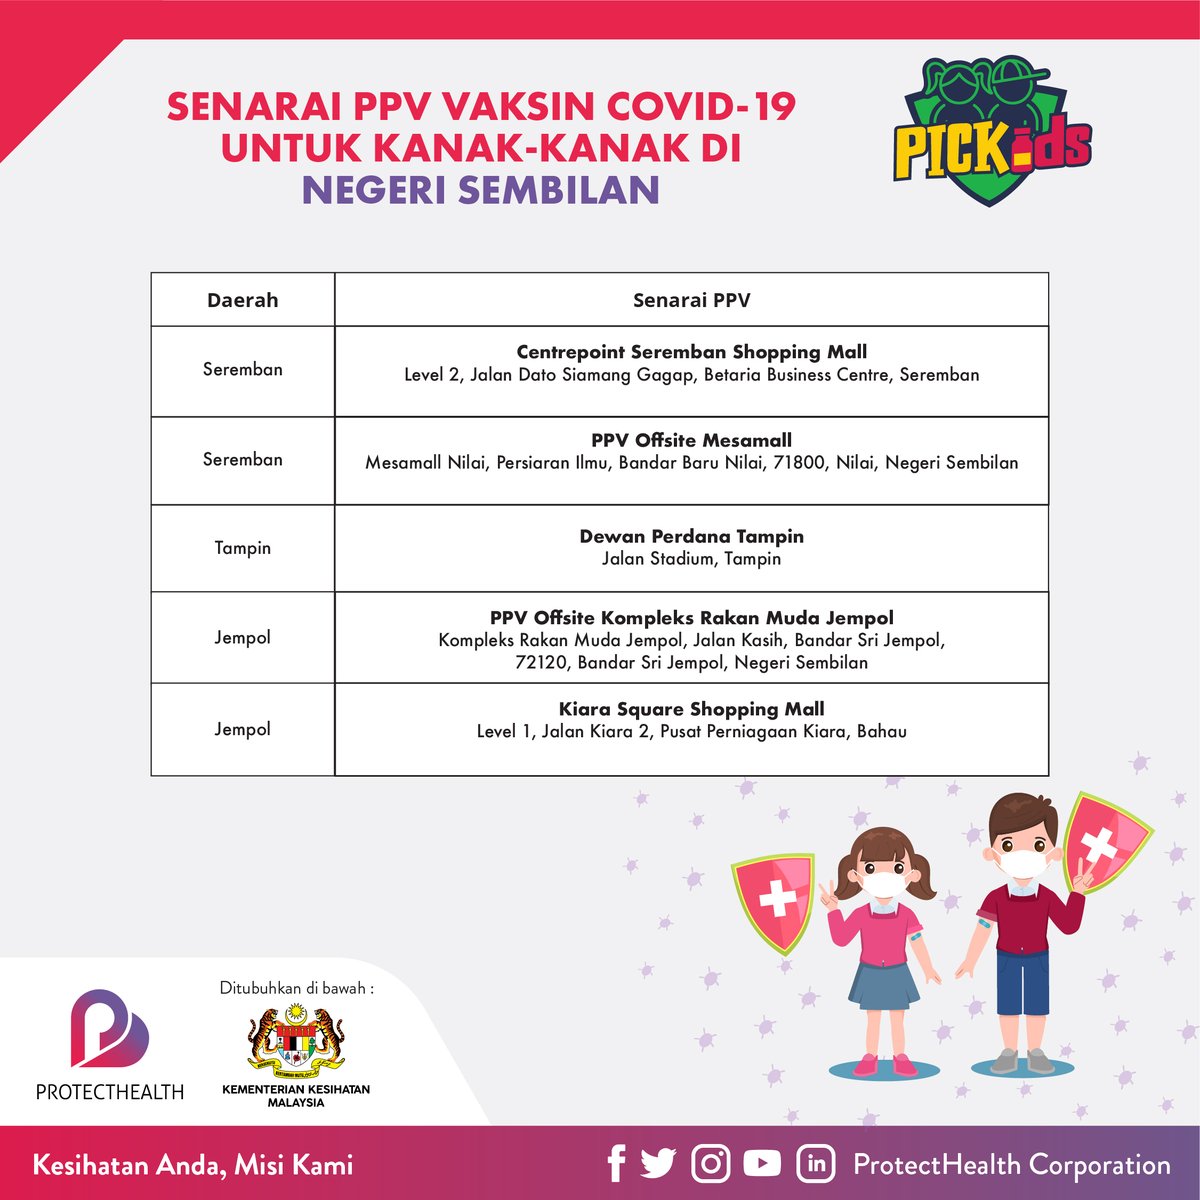 Senarai-senarai PPV #PICKids yang masih beroperasi untuk negeri Johor, Melaka dan Negeri Sembilan.